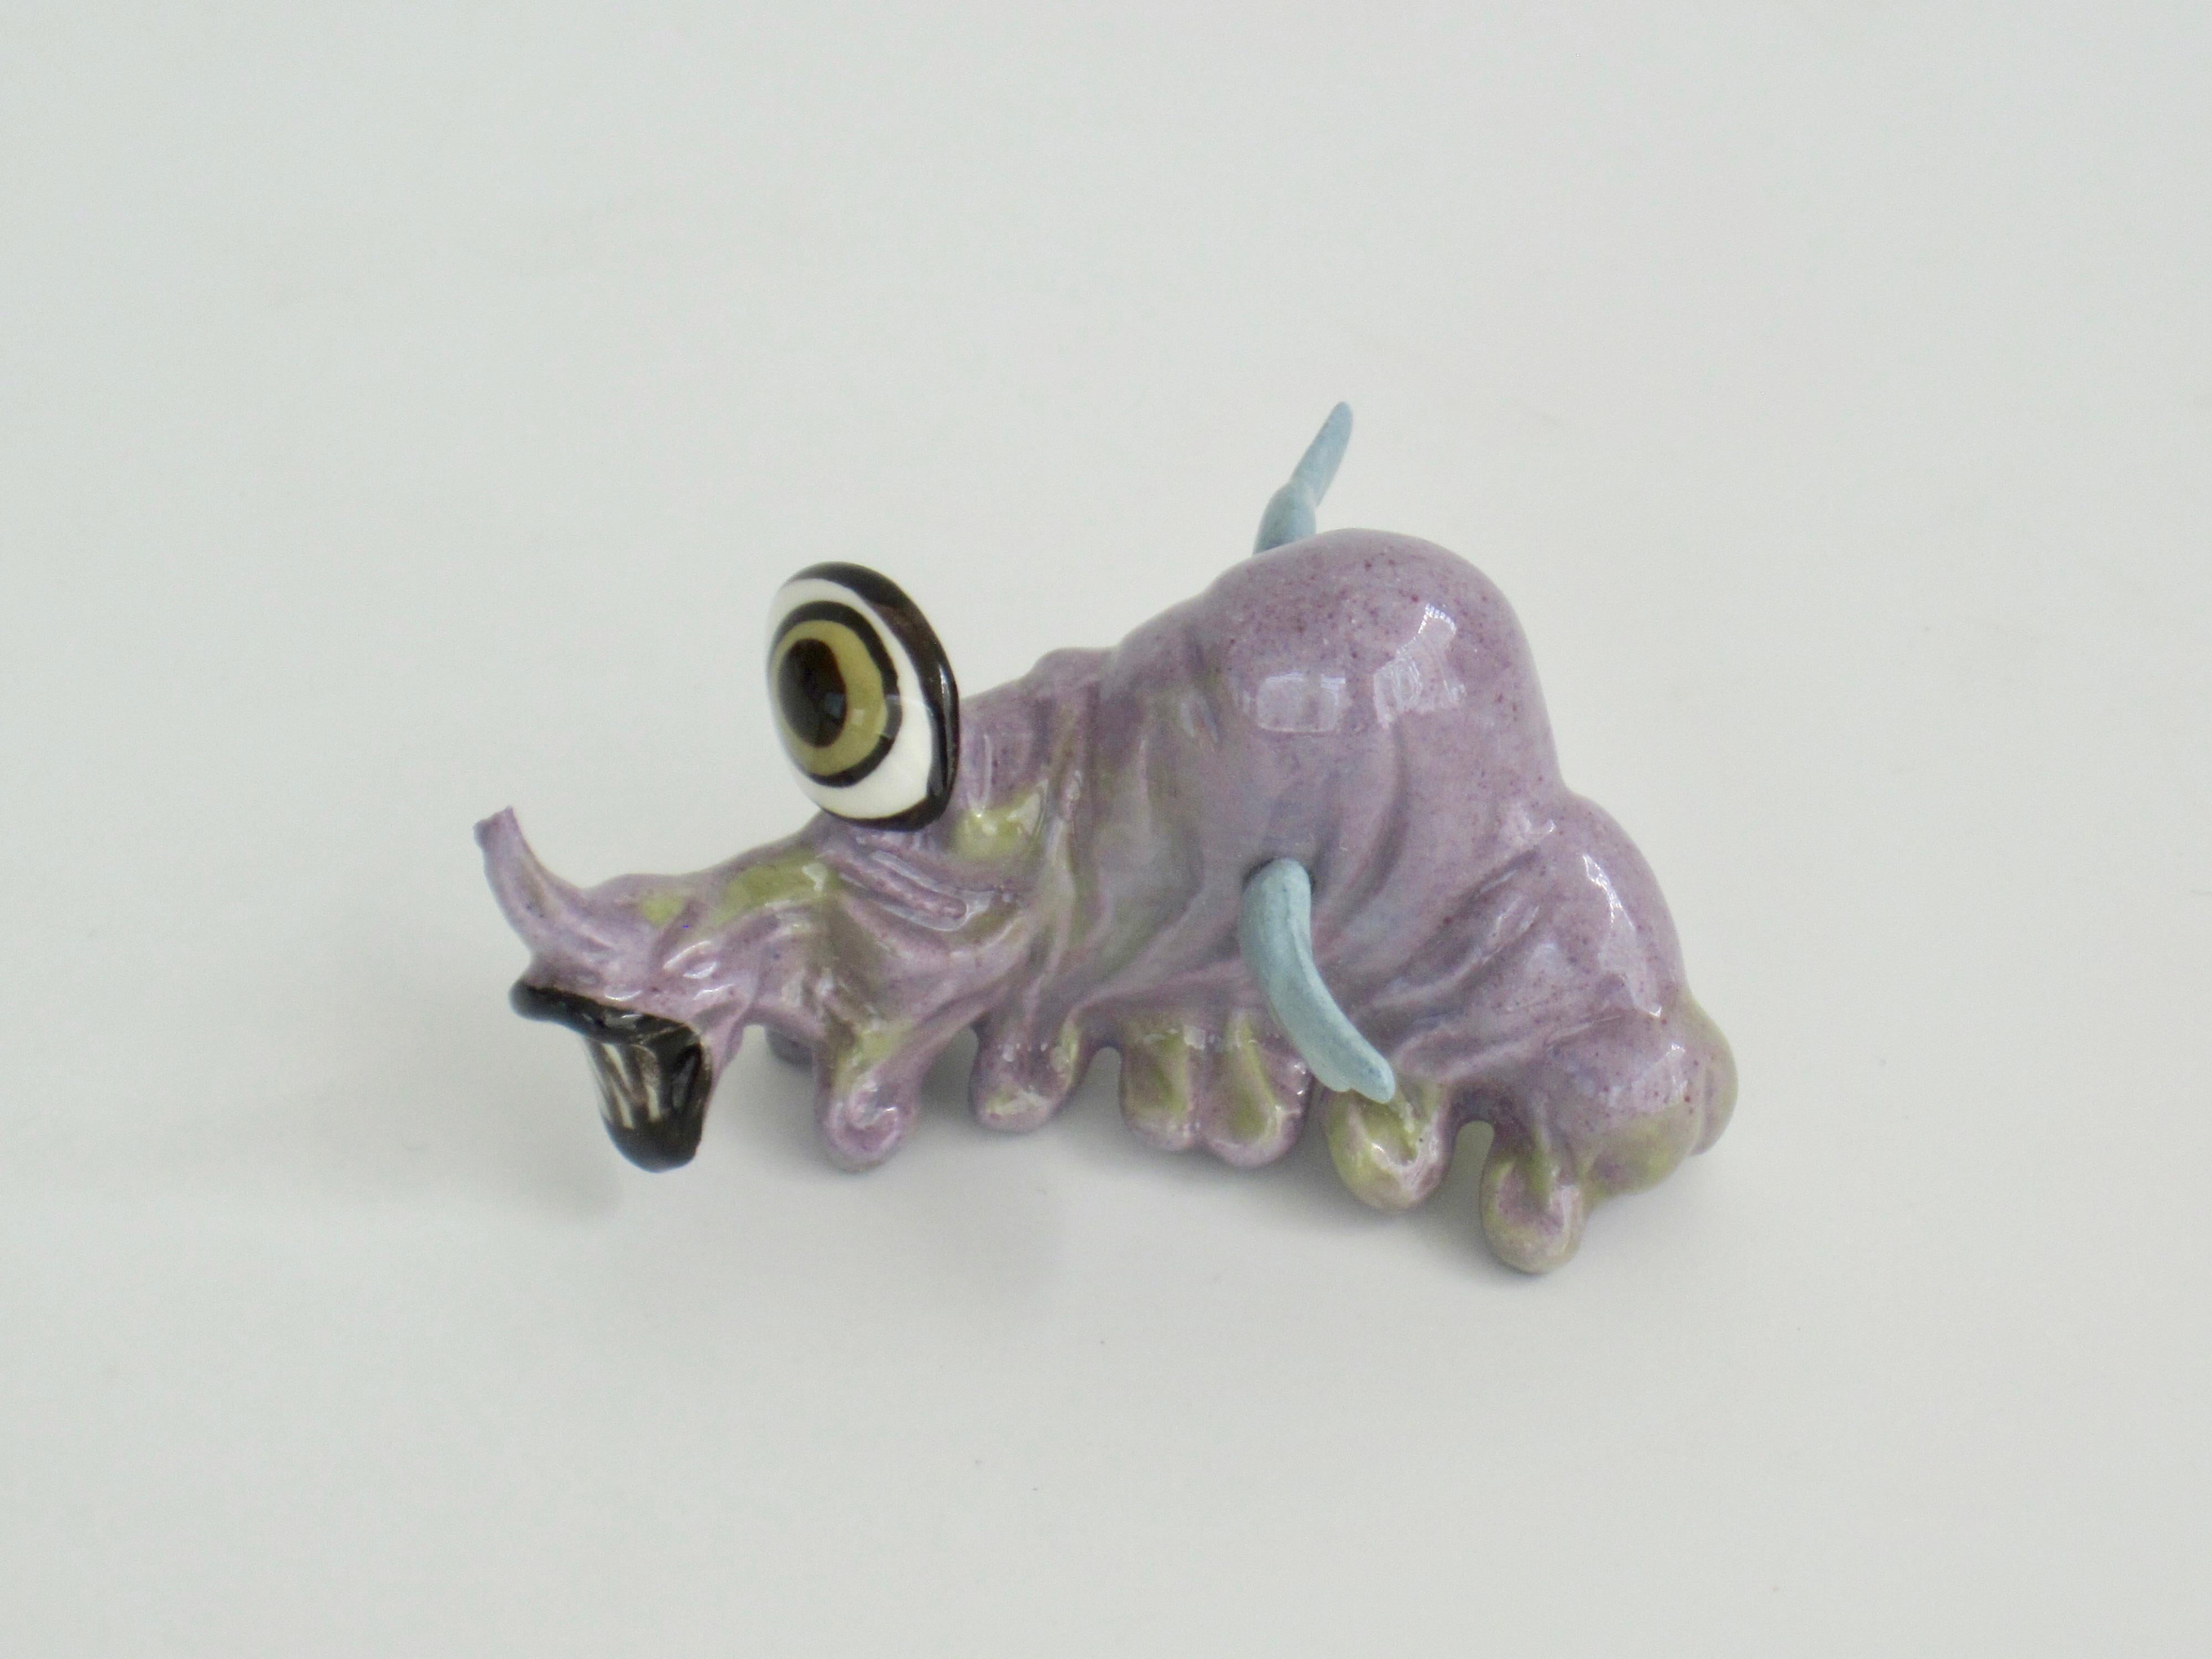 Glazed Hagen-Renaker Pottery Little Horribles Earthman Figurine